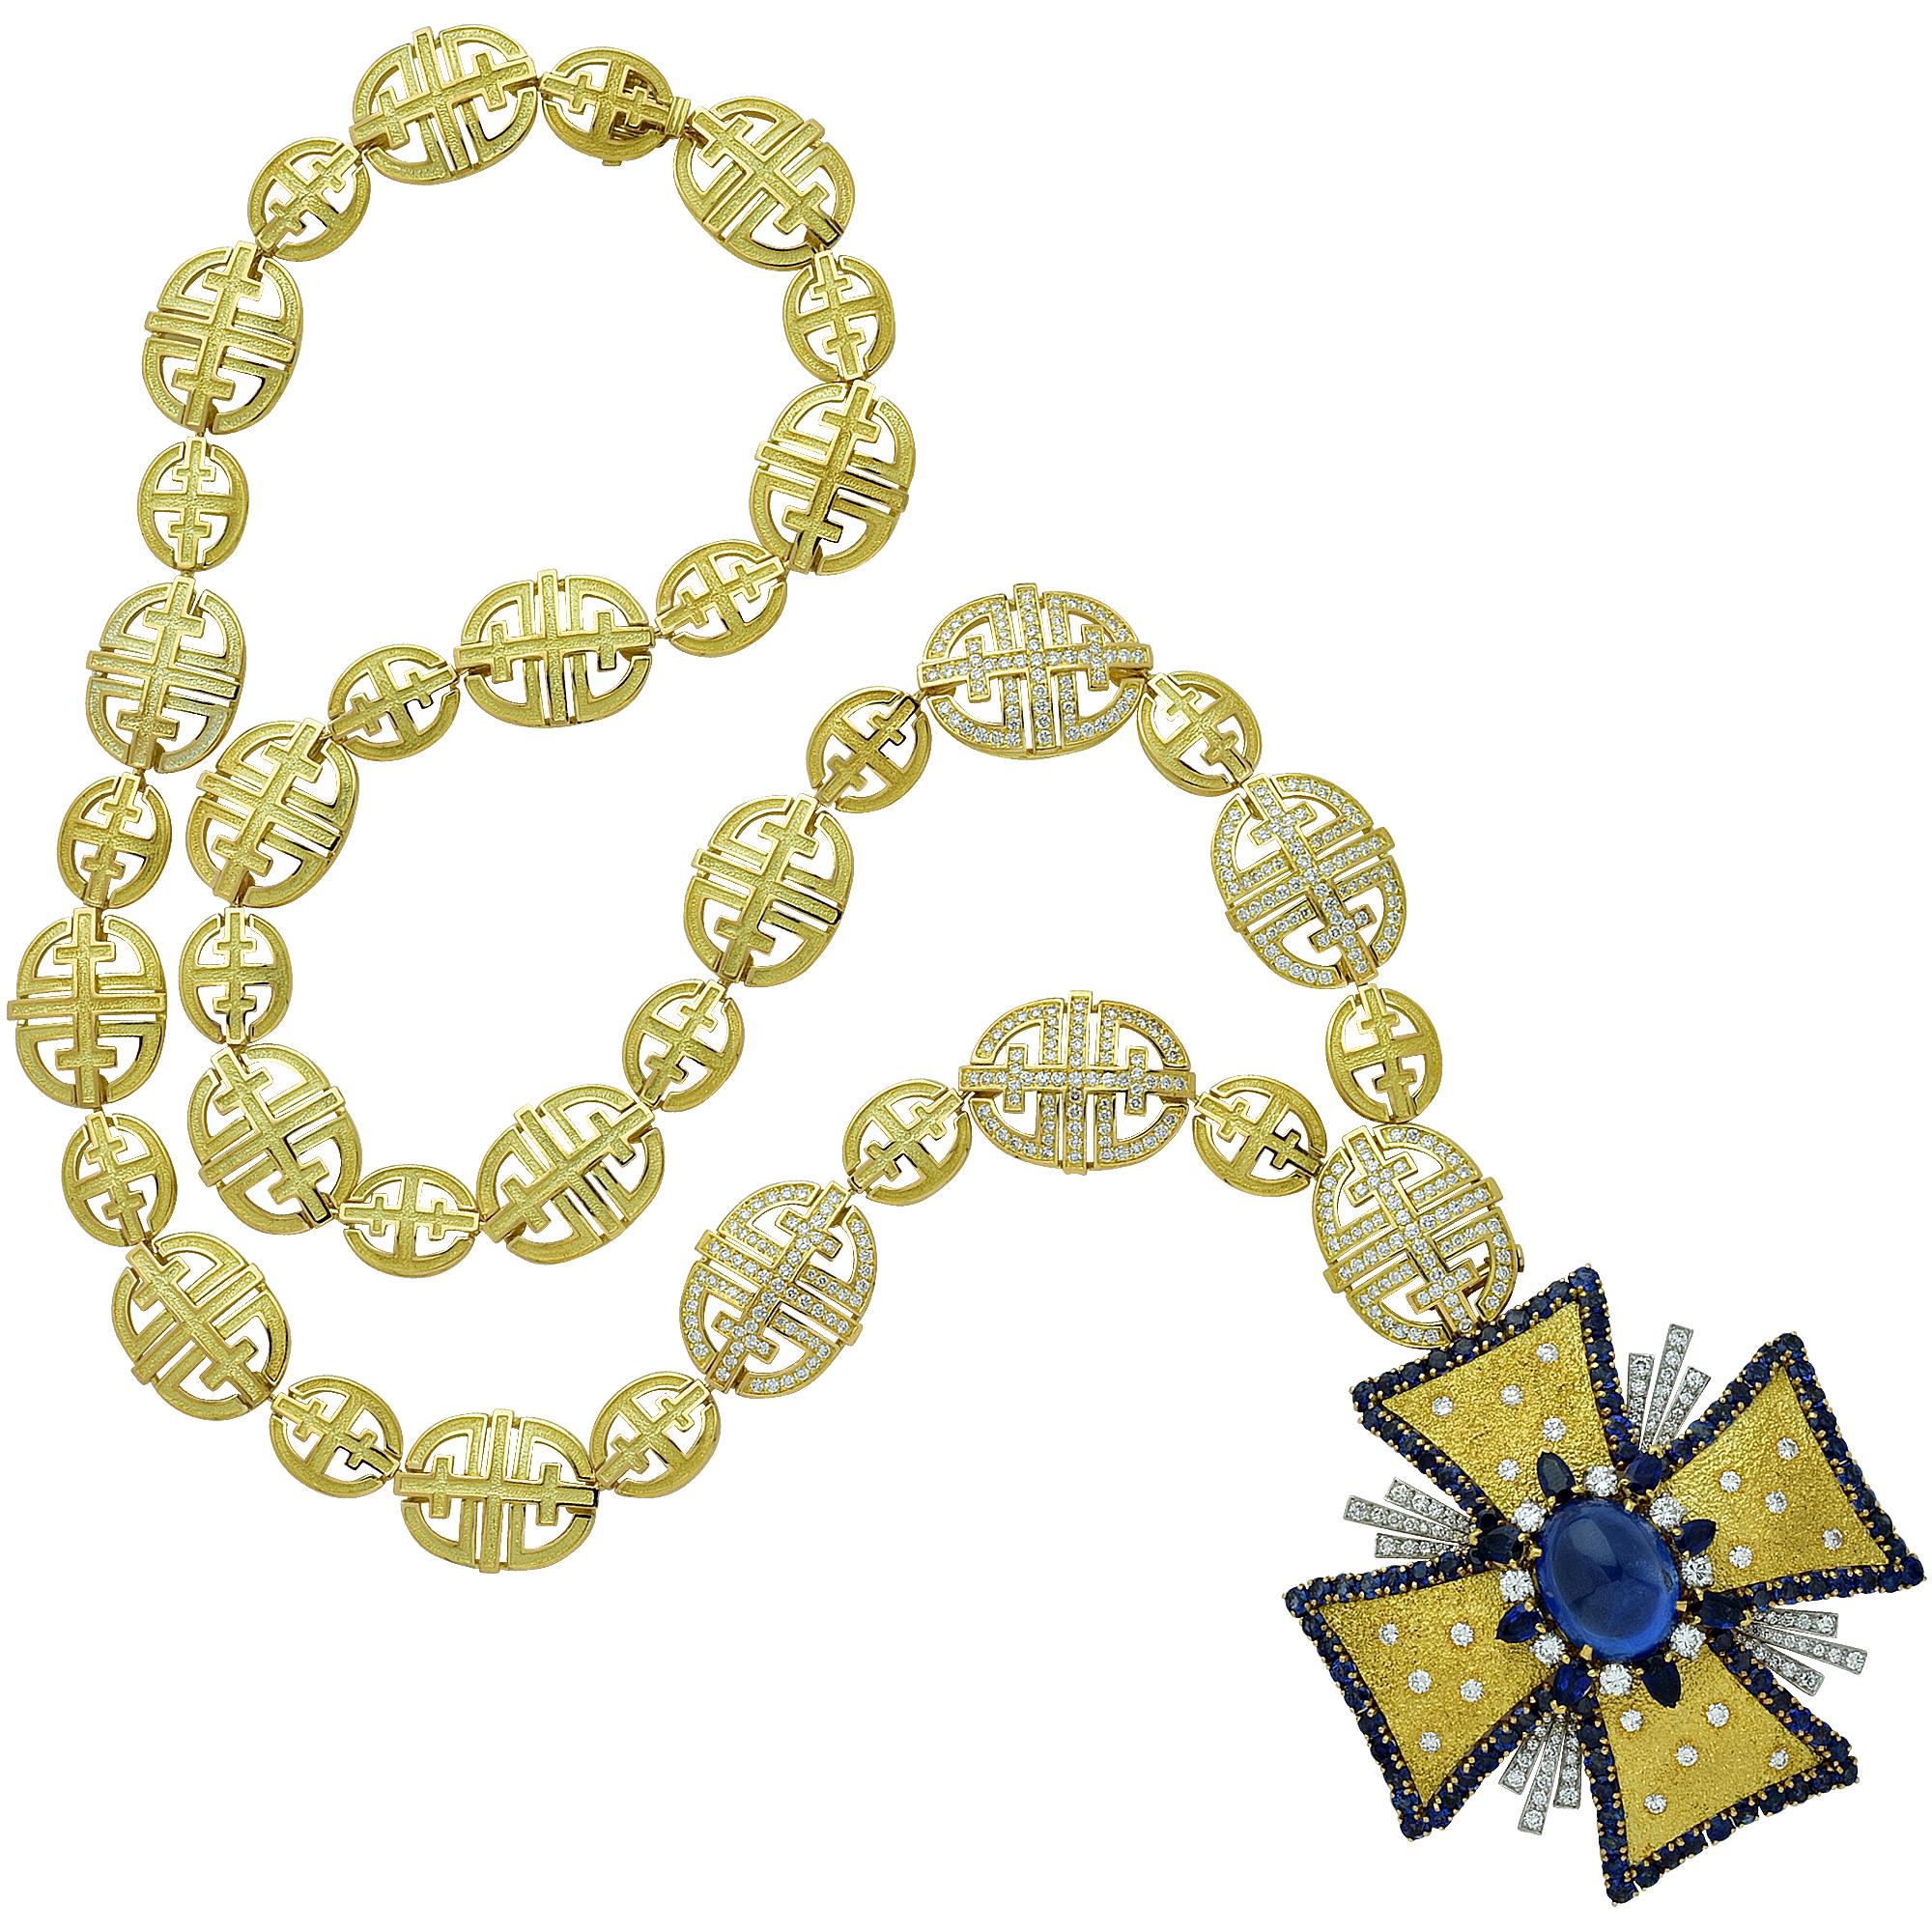 Halskette mit Malteserkreuz, AGL-zertifizierter Saphir und Diamant, 1970er Jahre (Moderne)